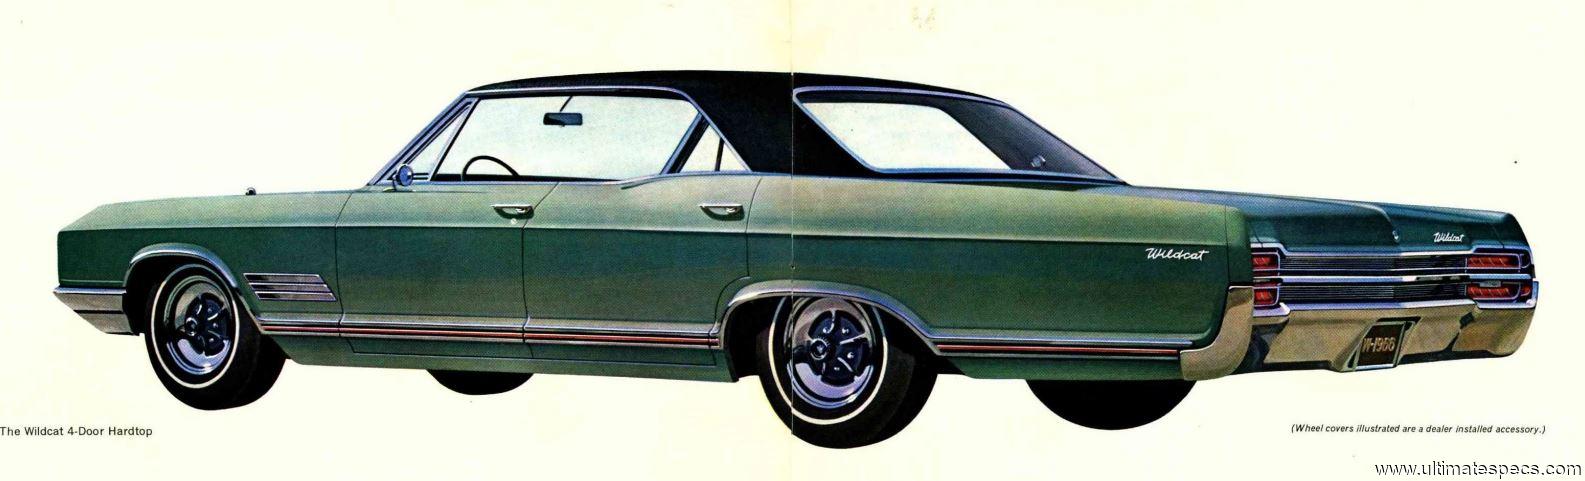 Buick Wildcat 4-Door Hardtop 1966